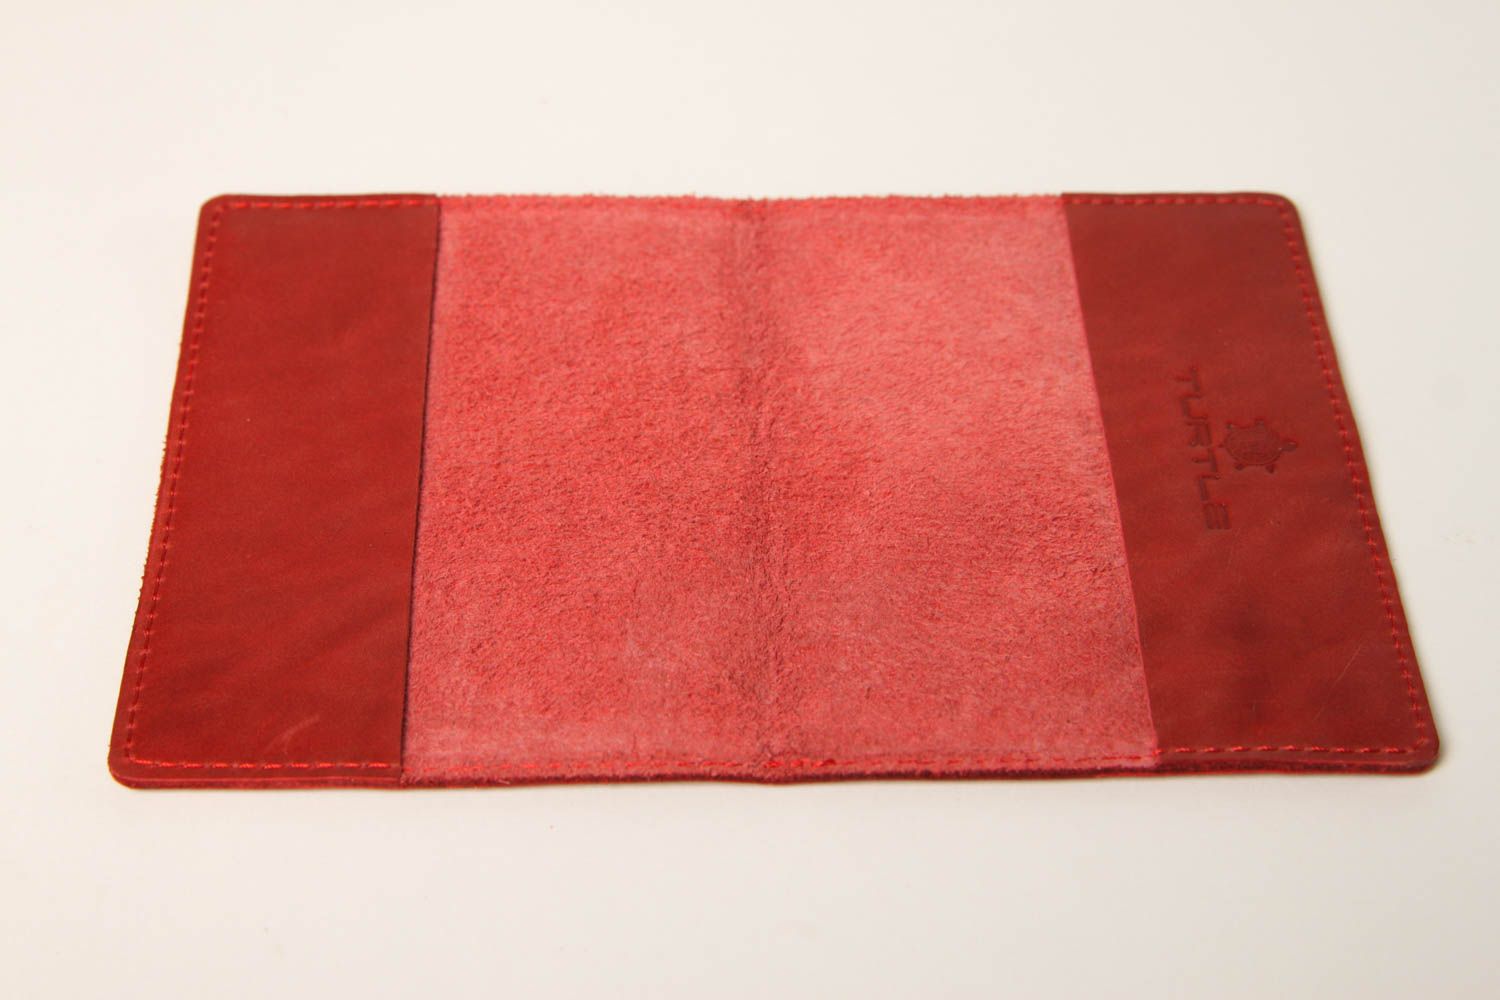 Оригинальный подарок хенд мейд аксессуар из кожи красная обложка на паспорт фото 5